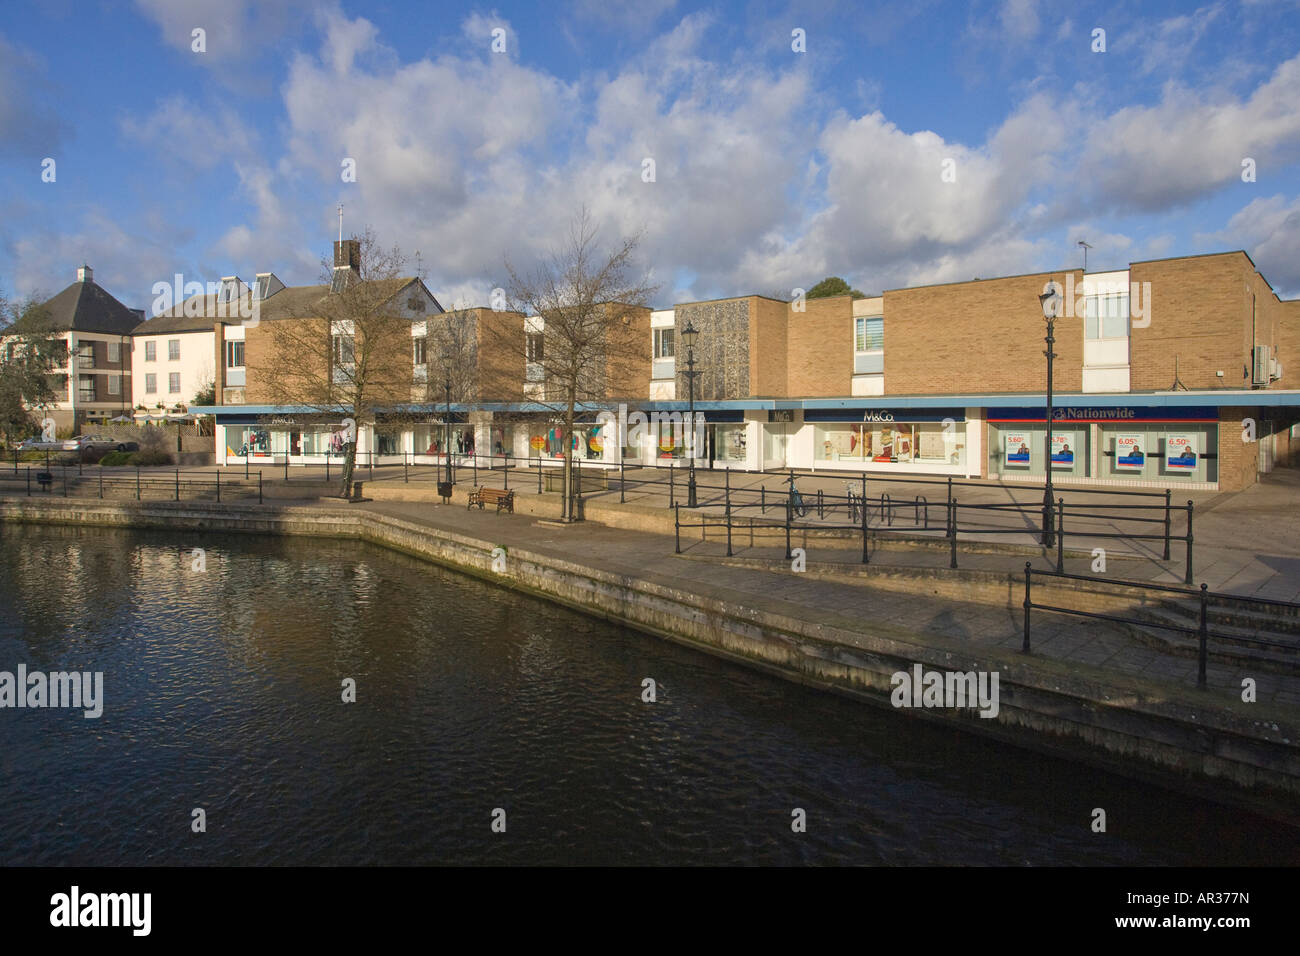 Geschäfte neben dem Fluss Thet im Stadtzentrum von Thetford, Norfolk, Großbritannien Stockfoto